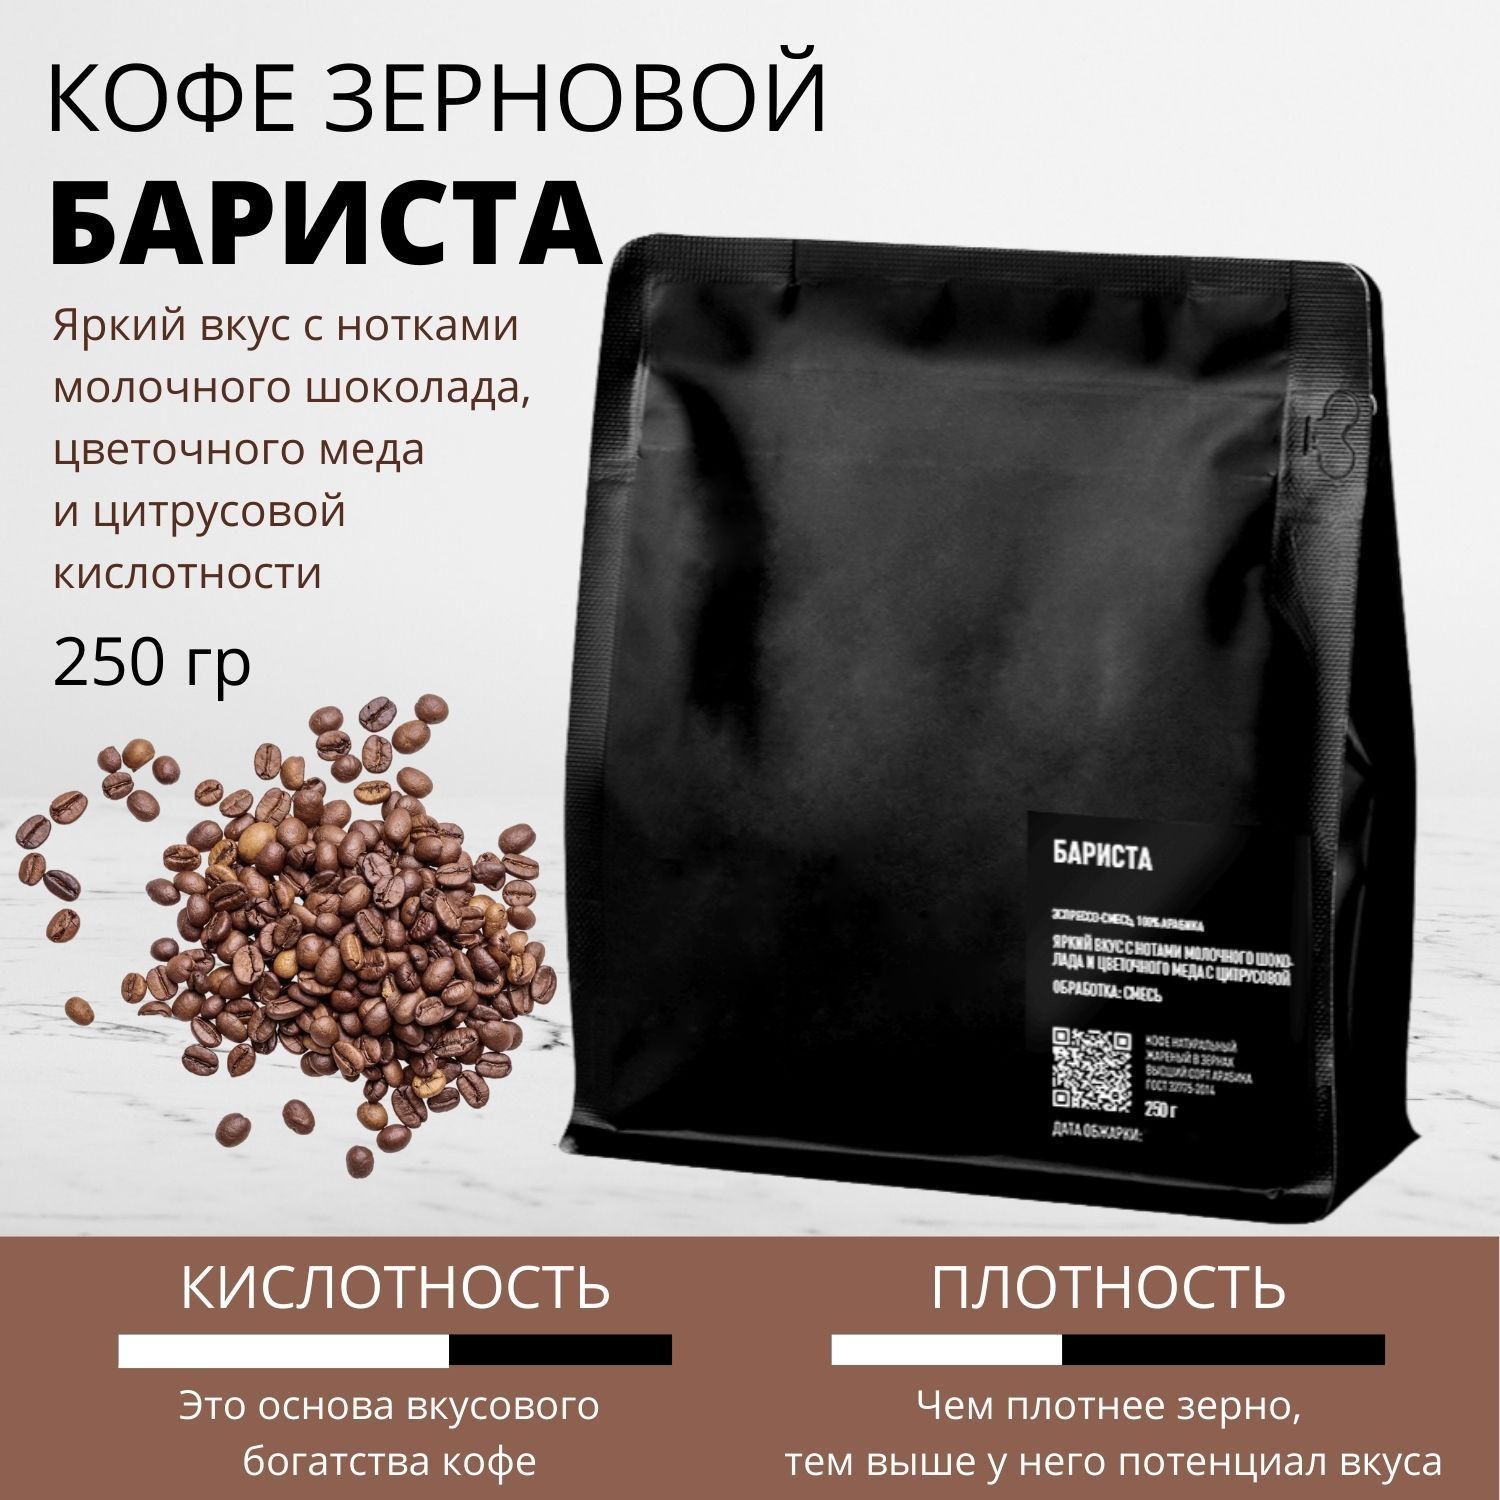 Бариста в зернах отзывы. Кофе Арабика в зернах 250 грамм полис 21 век. Кофе Ноты.